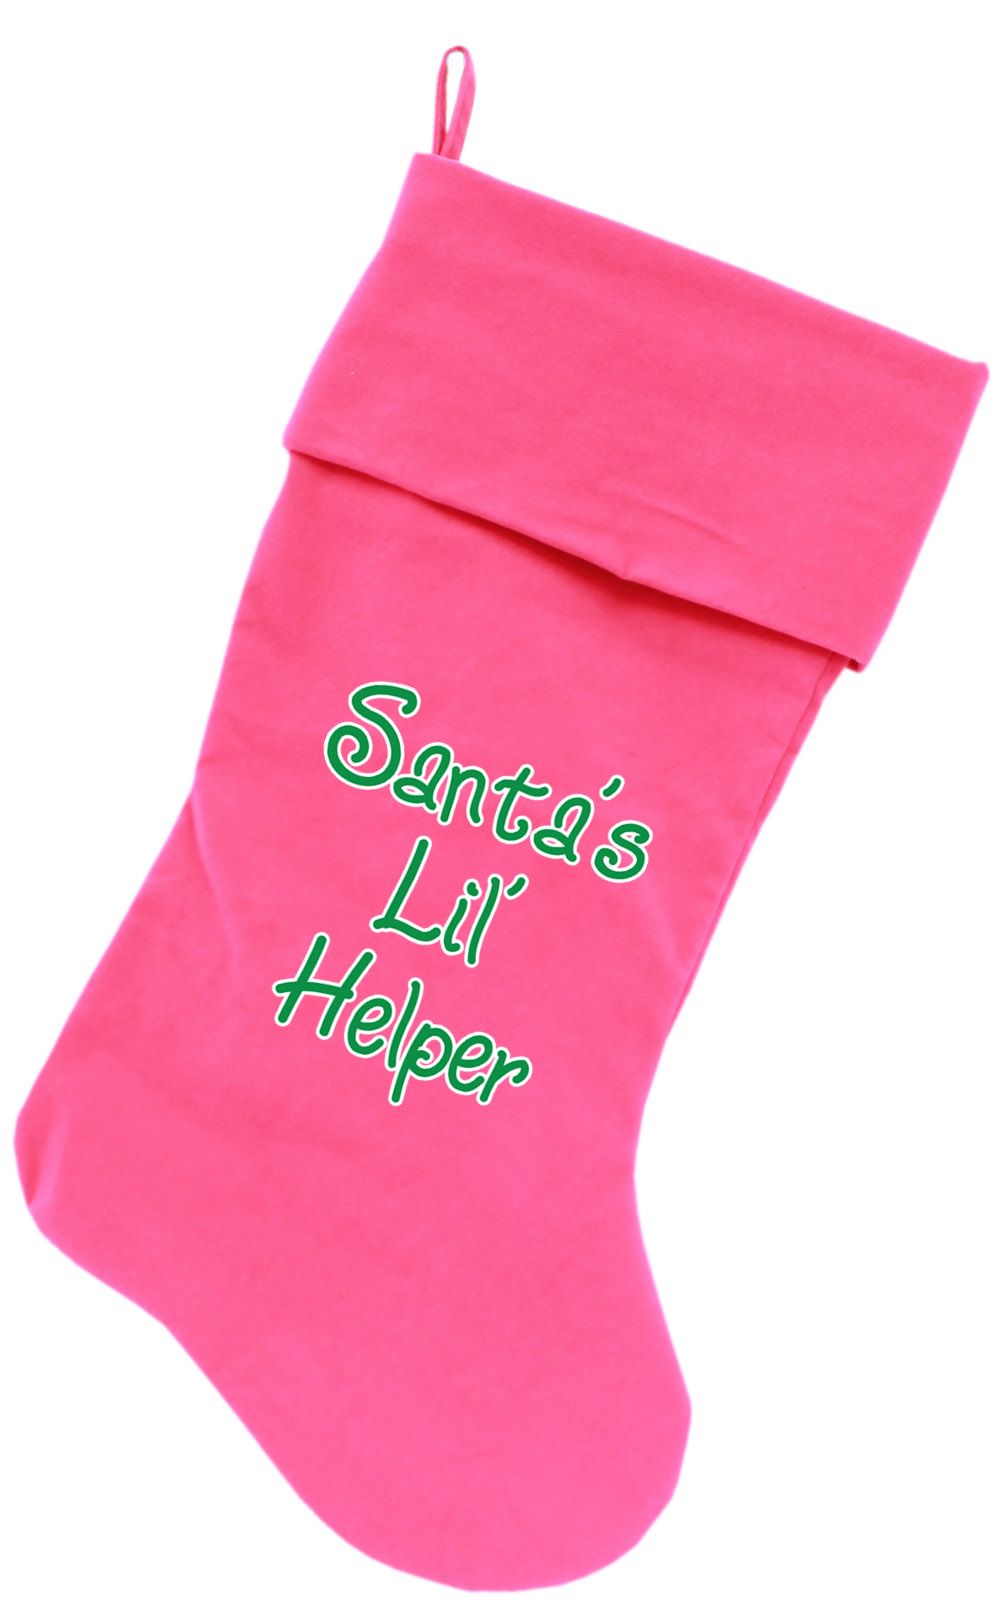 Santa's Lil' Helper Screen Print 18 inch Velvet Christmas Stocking Pink